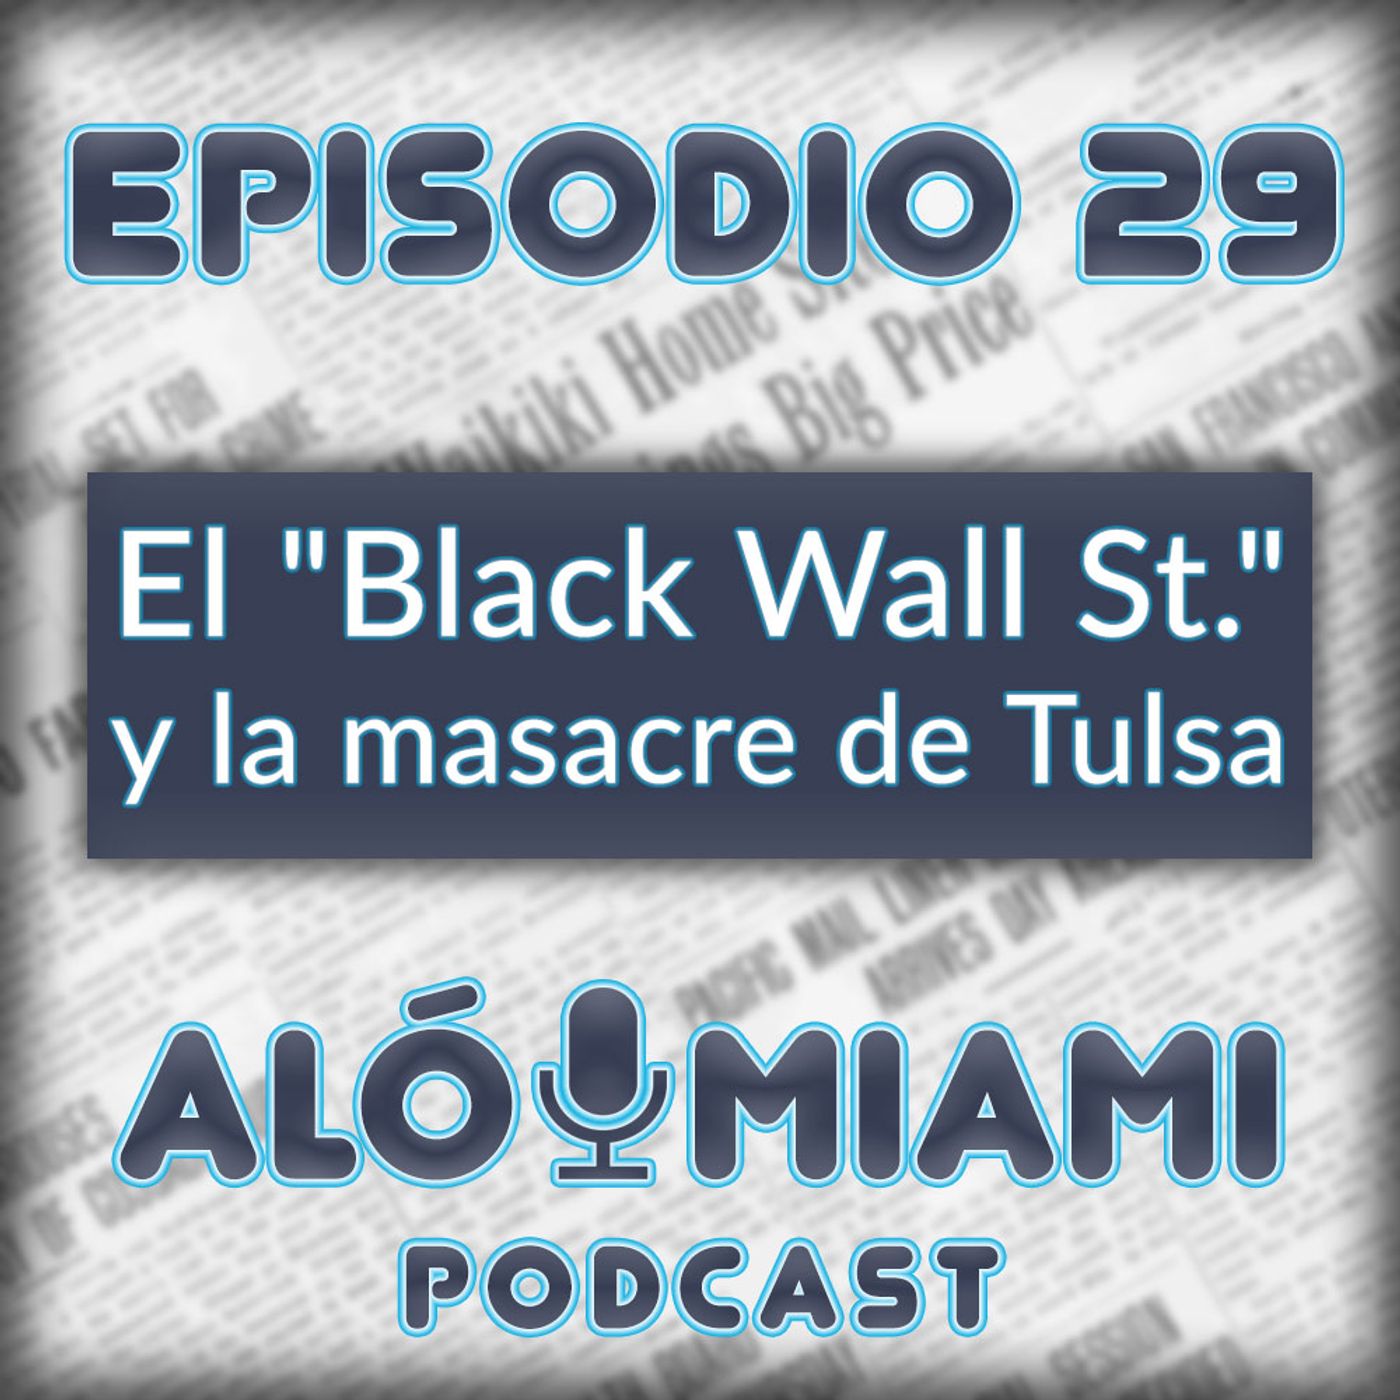 Aló Miami - Ep. 29 - El "Black Wall St." y la masacre de Tulsa